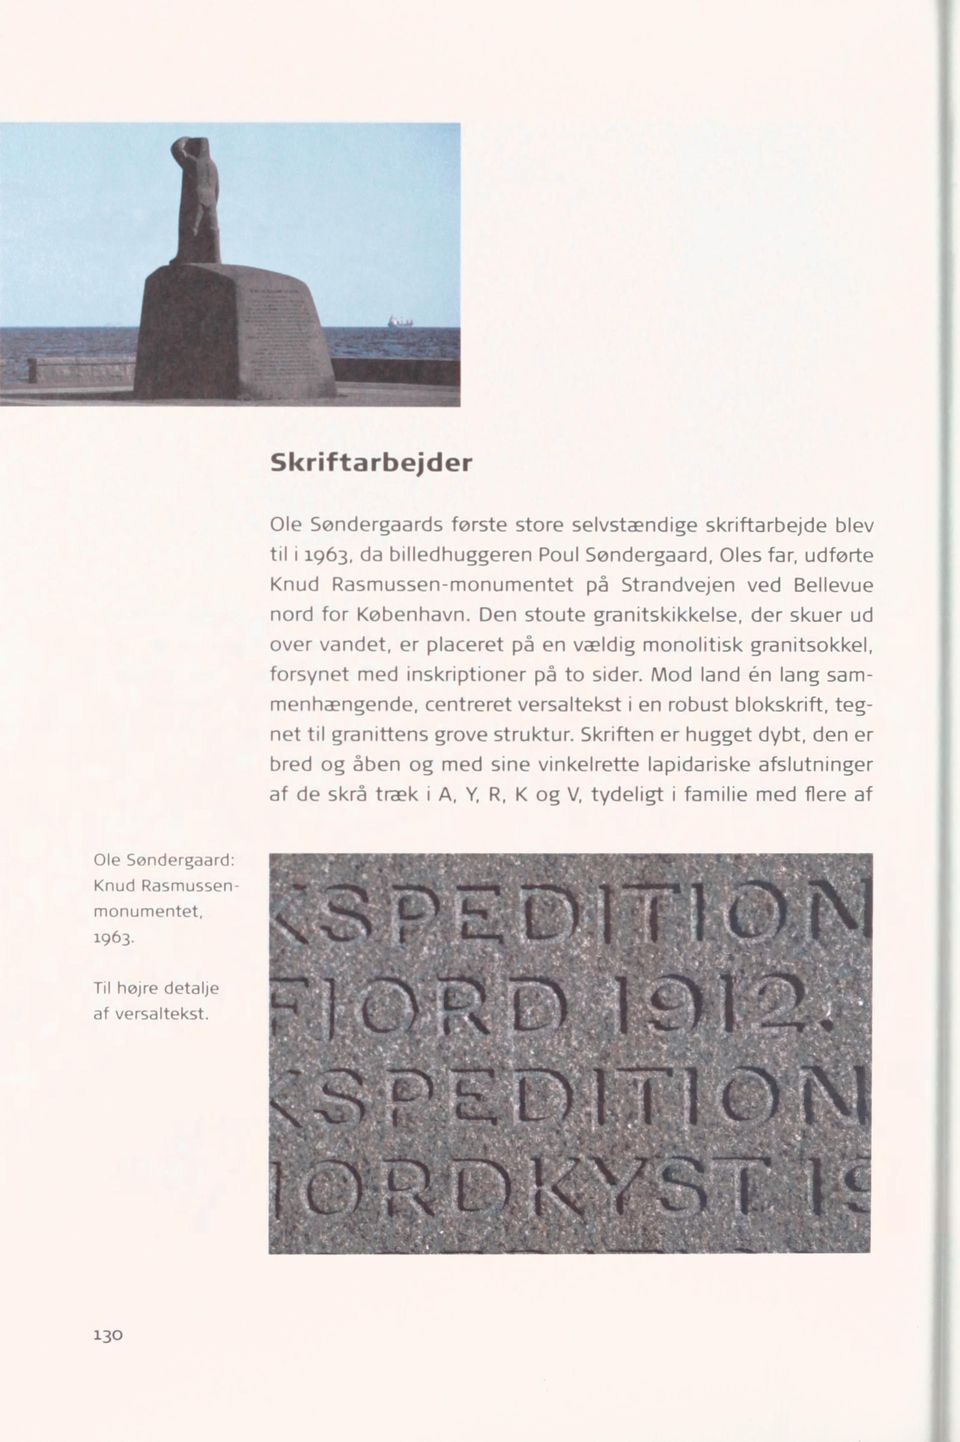 Den stoute granitskikkelse, der skuer ud over vandet, er placeret på en vældig monolitisk granitsokkel, forsynet med inskriptioner på to sider.